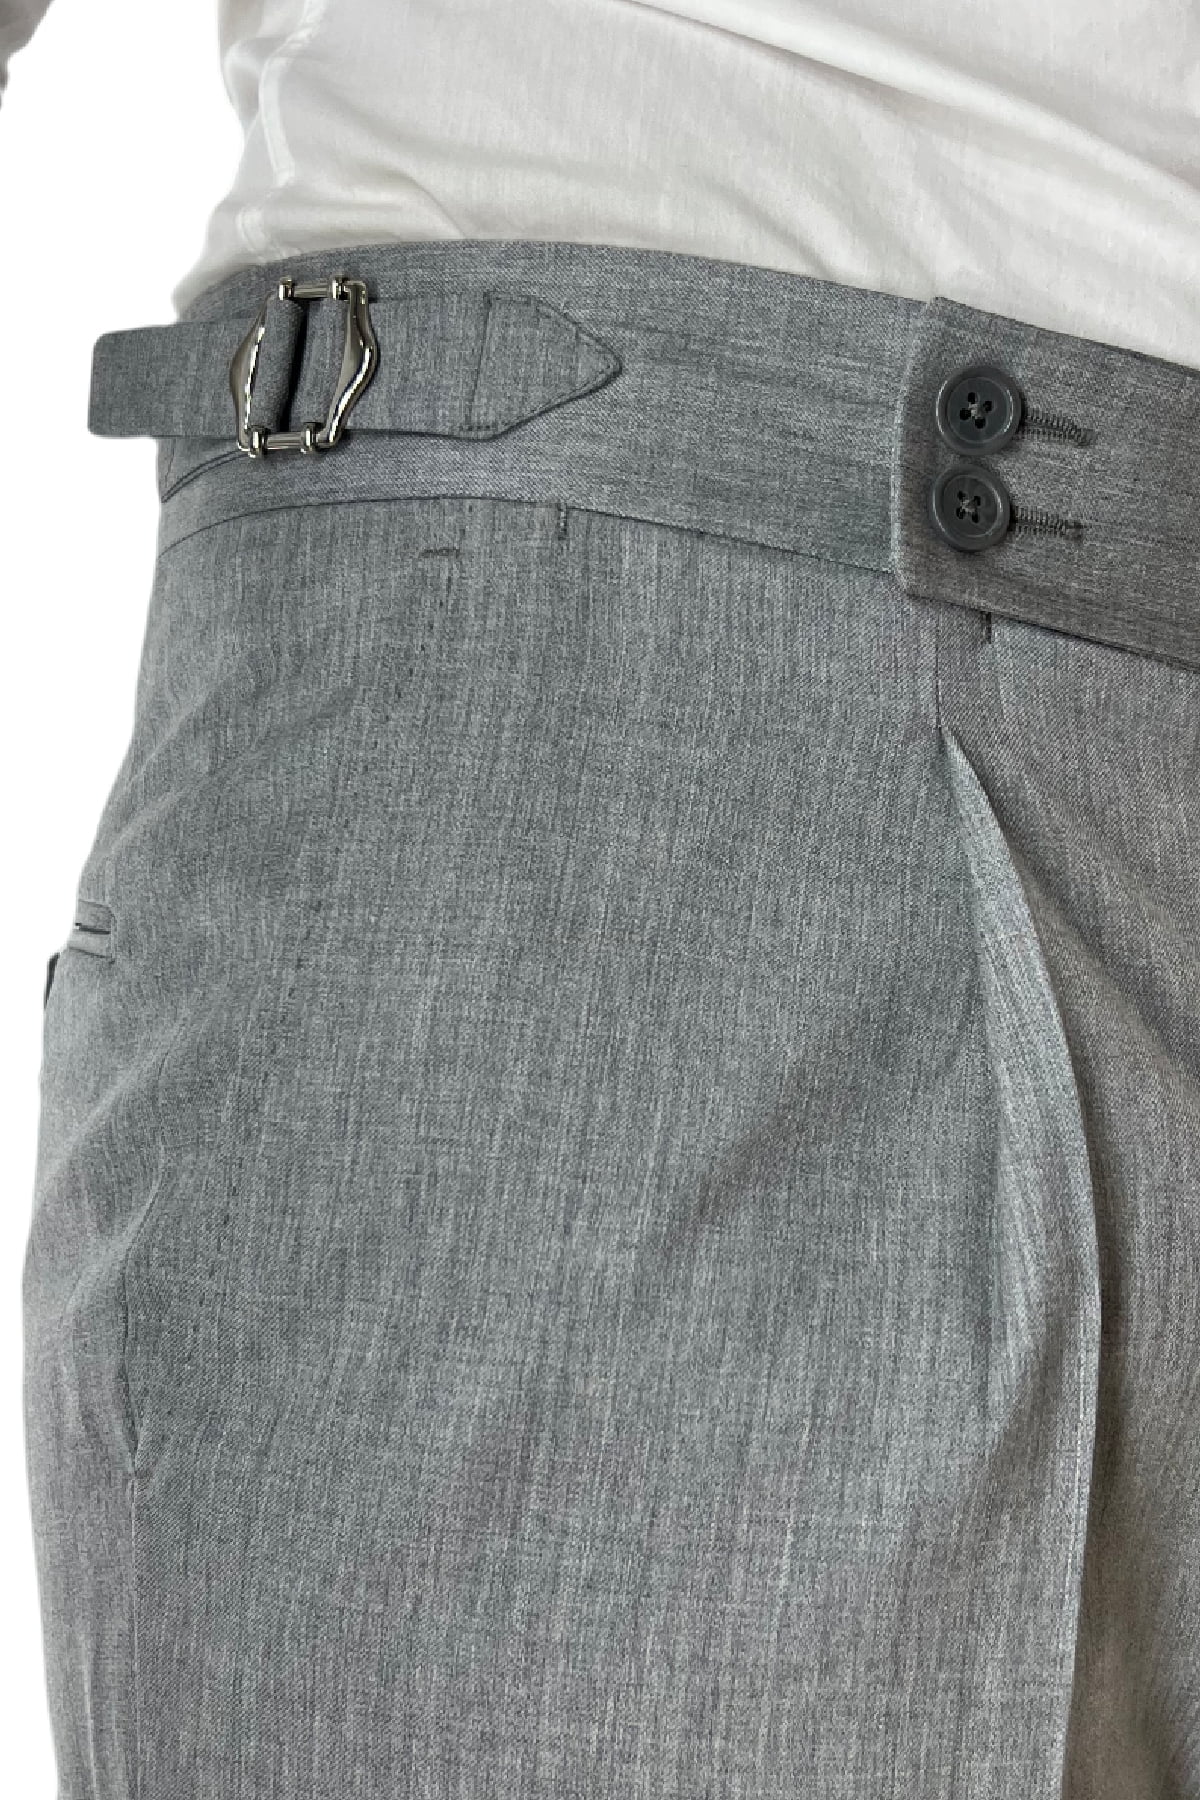 Pantalone uomo grigio chiaro fresco lana Vitale Barberis vita alta con pinces fibbie laterali e risvolto 4cm